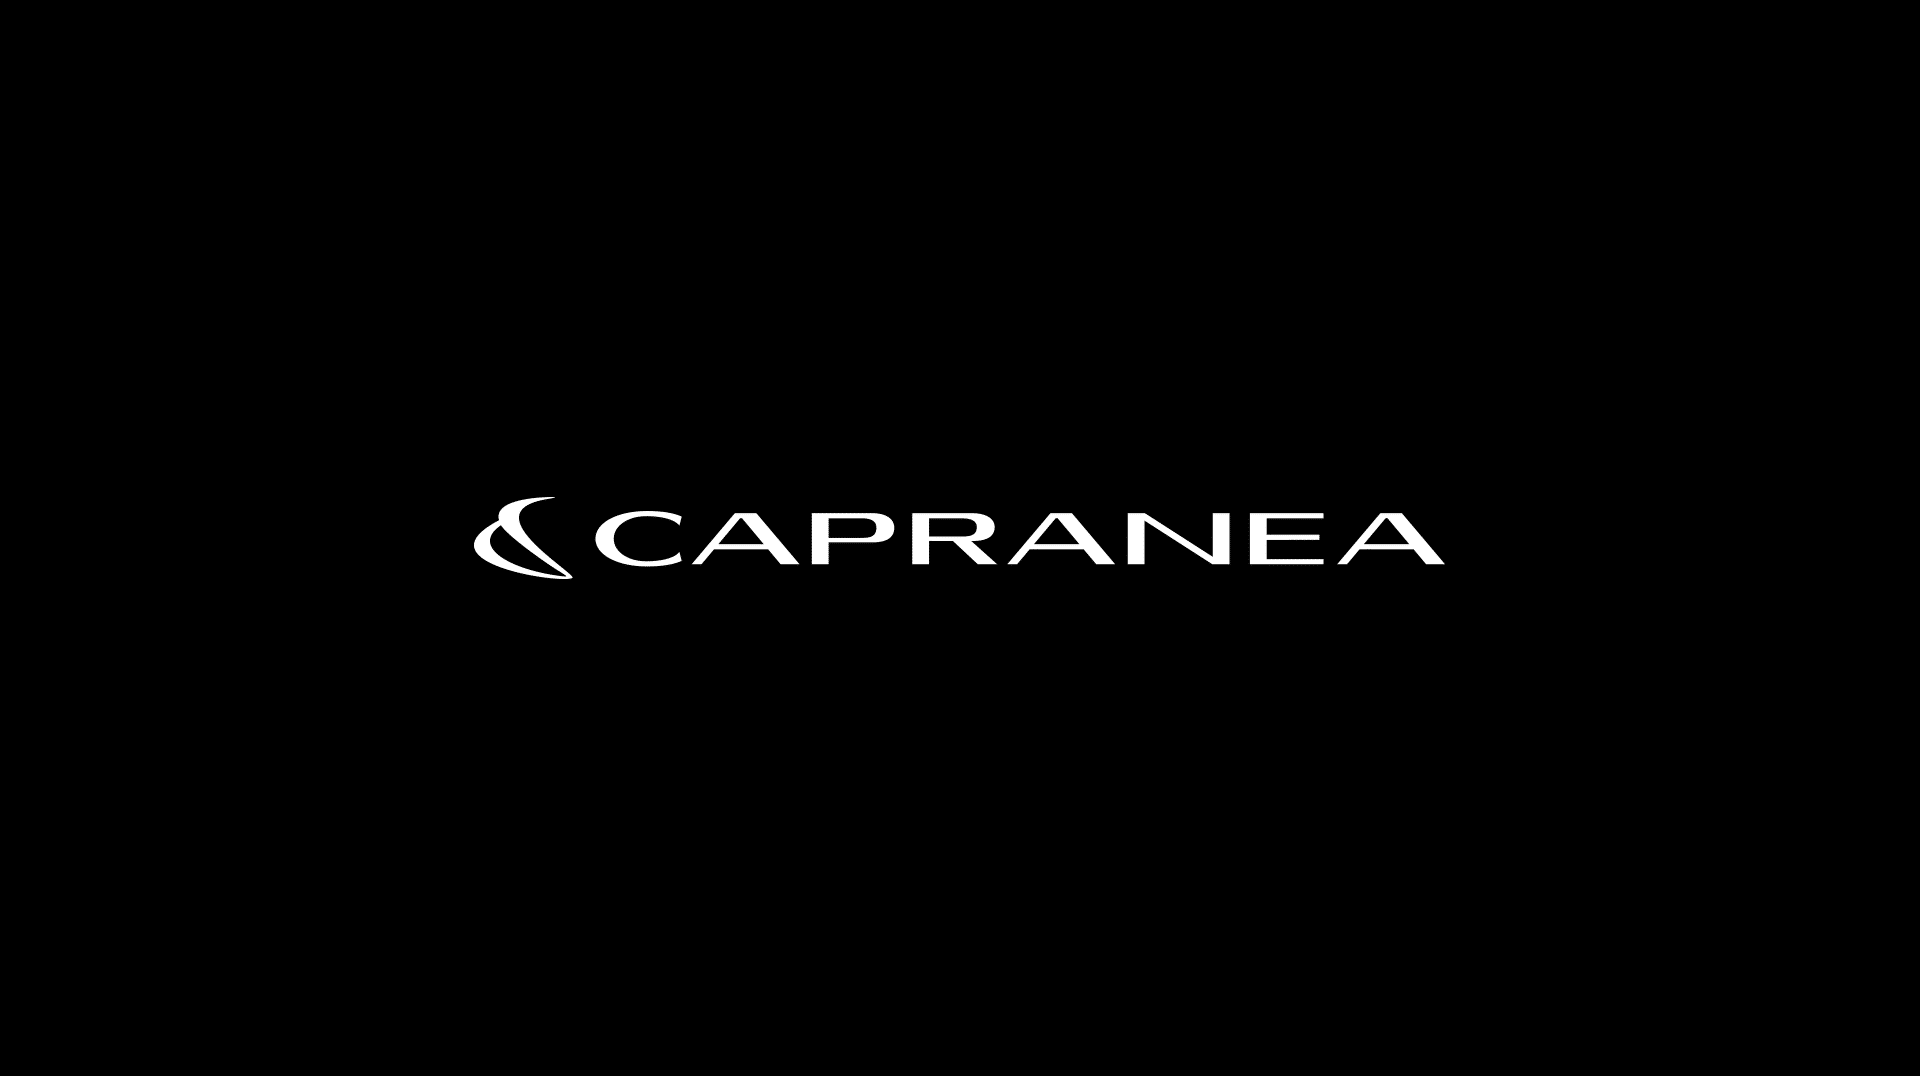 Apparel company logo design